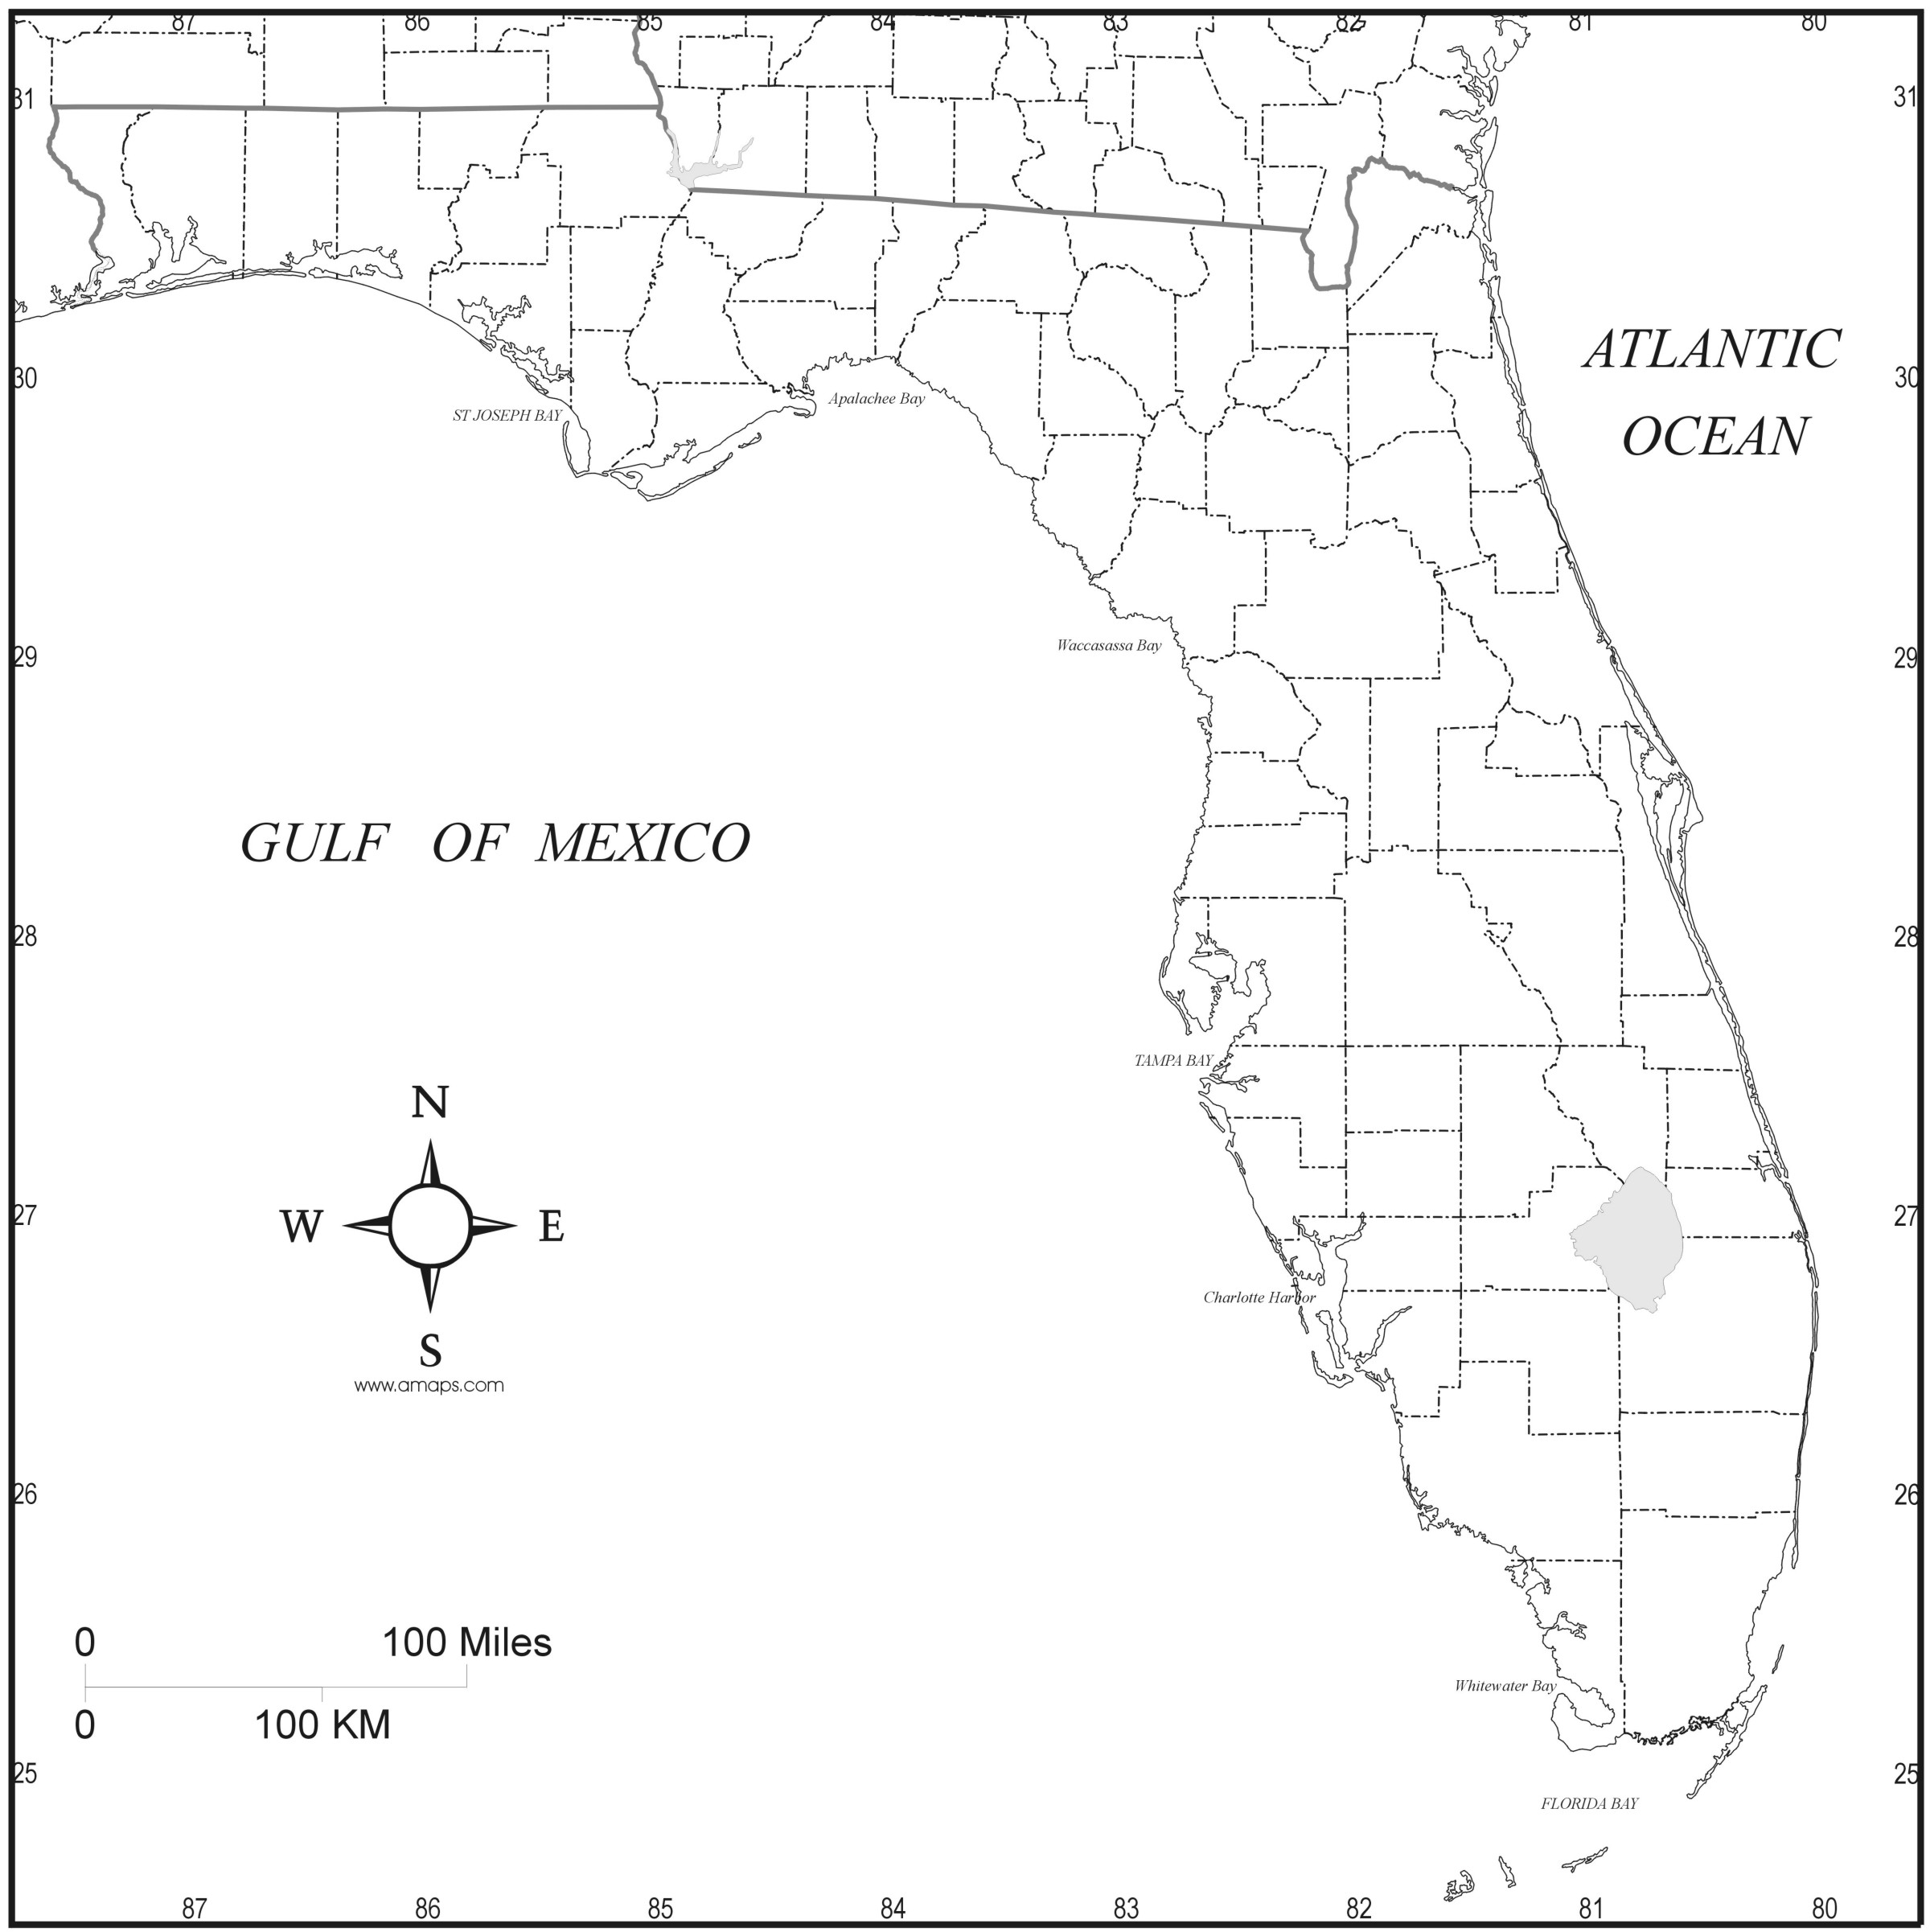 Карта Флориды с городами, подробная карта штата Флорида США скачать, соспутника детальная автомобильная